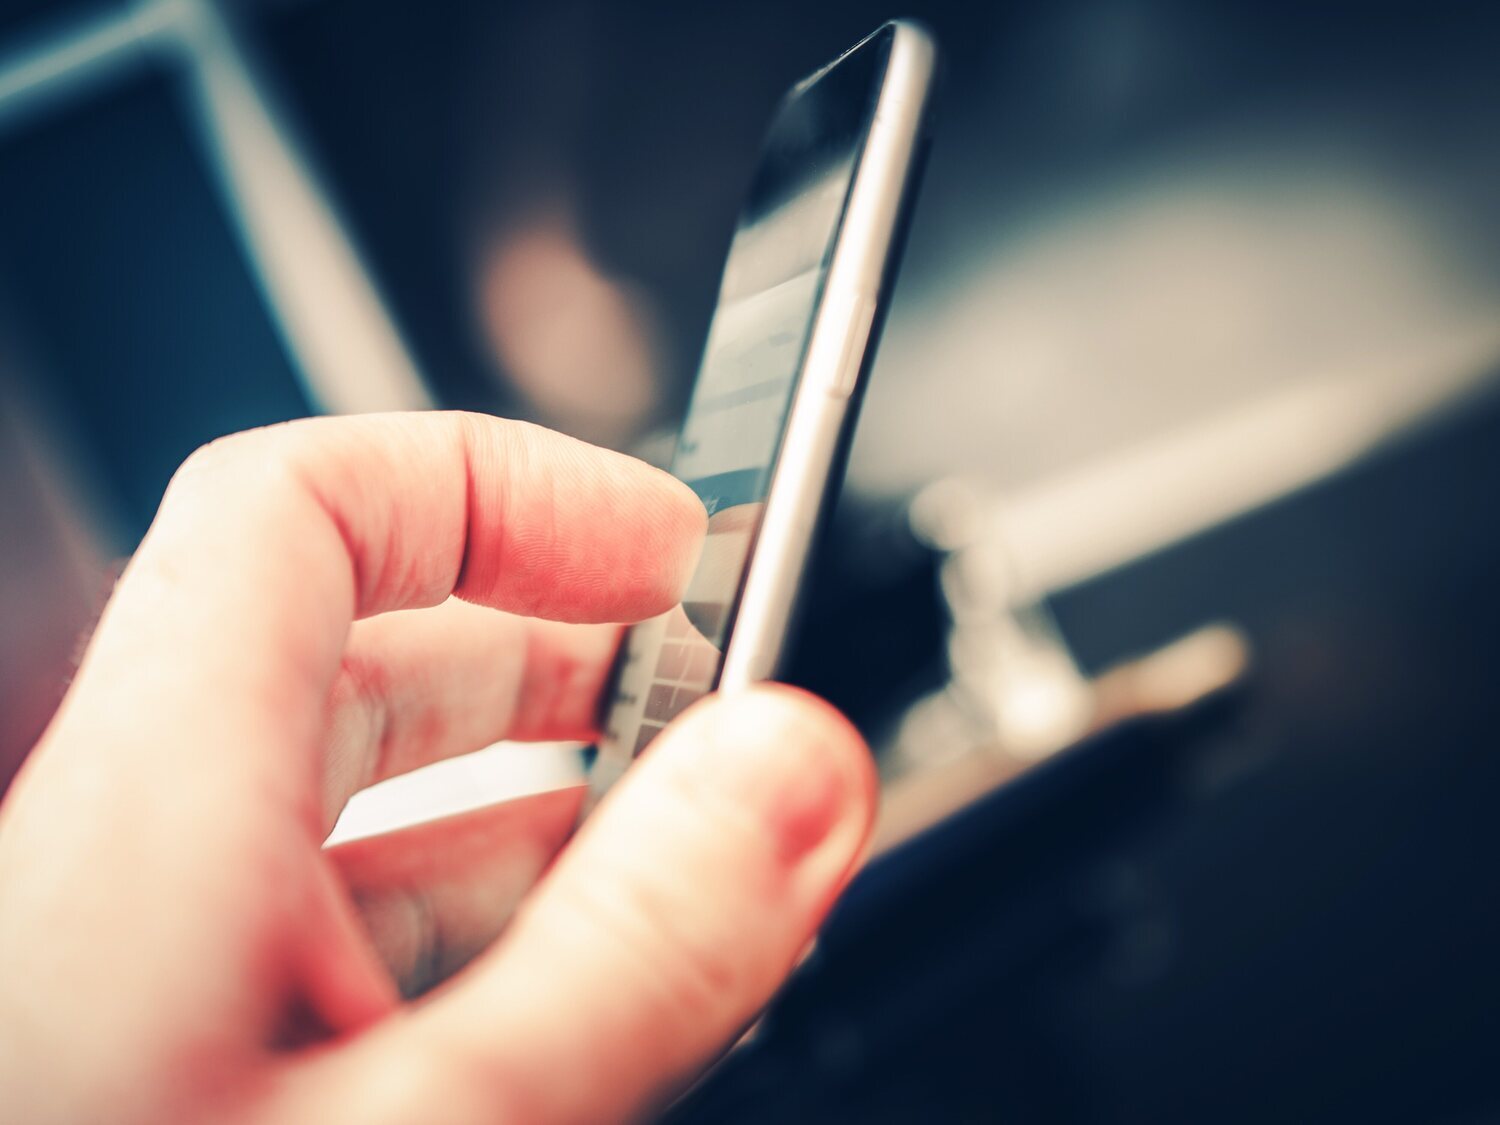 Los expertos aseguran que no desinfectar la pantalla del móvil puede poner en riesgo nuestra salud